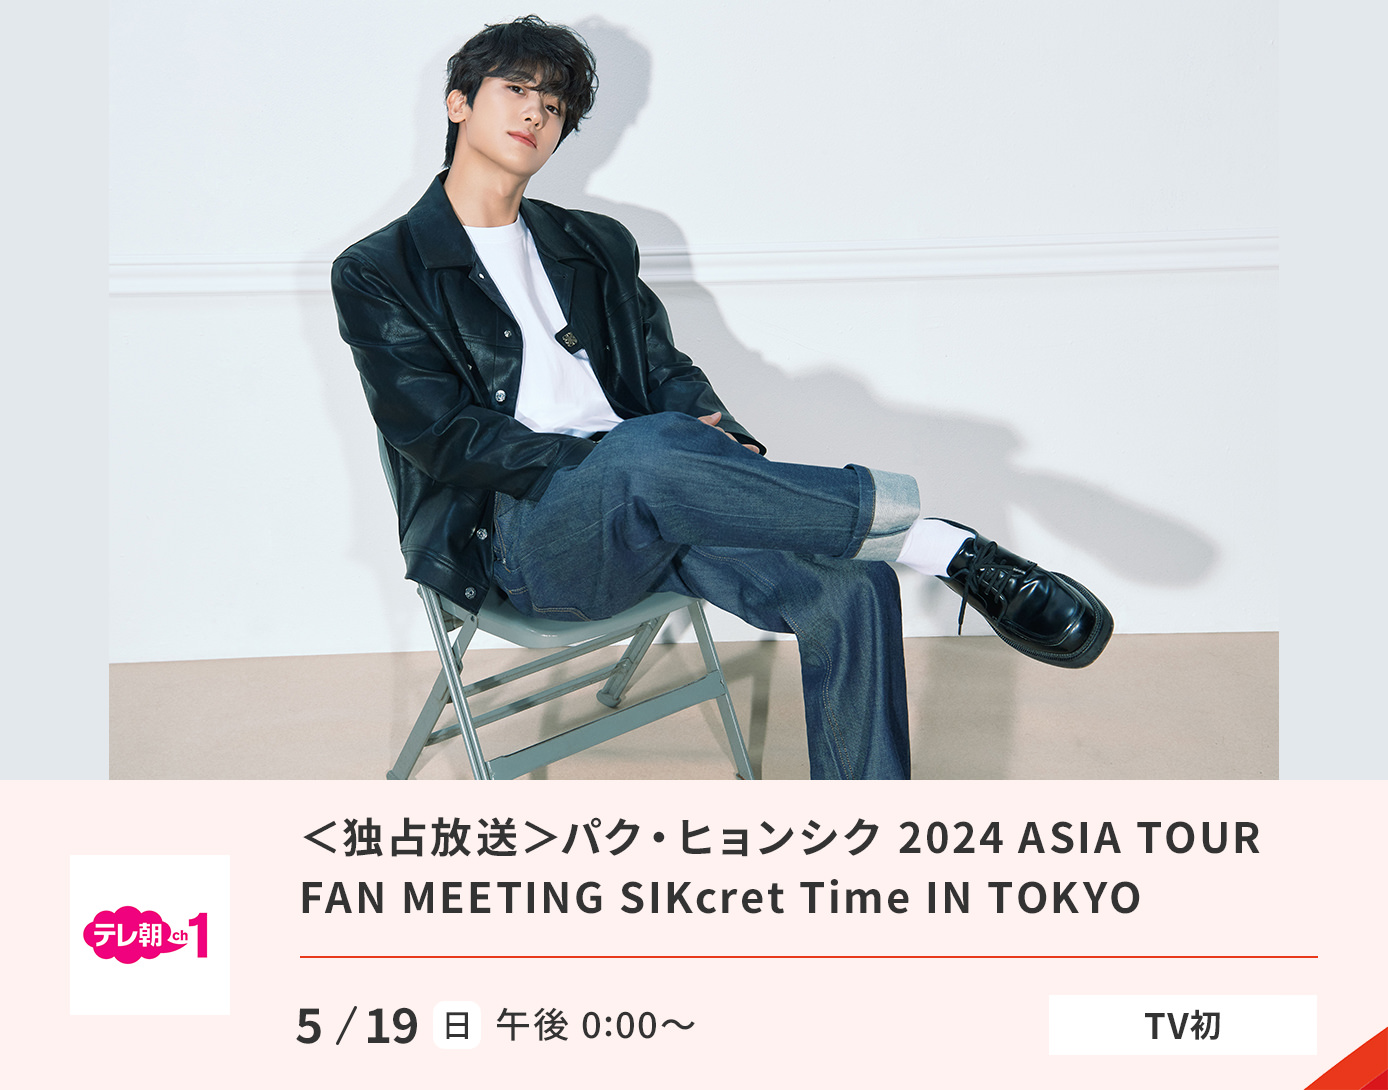 <独占放送>パク・ヒョンシク 2024 ASIA TOUR FAN MEETING SIKcret Time IN TOKYO